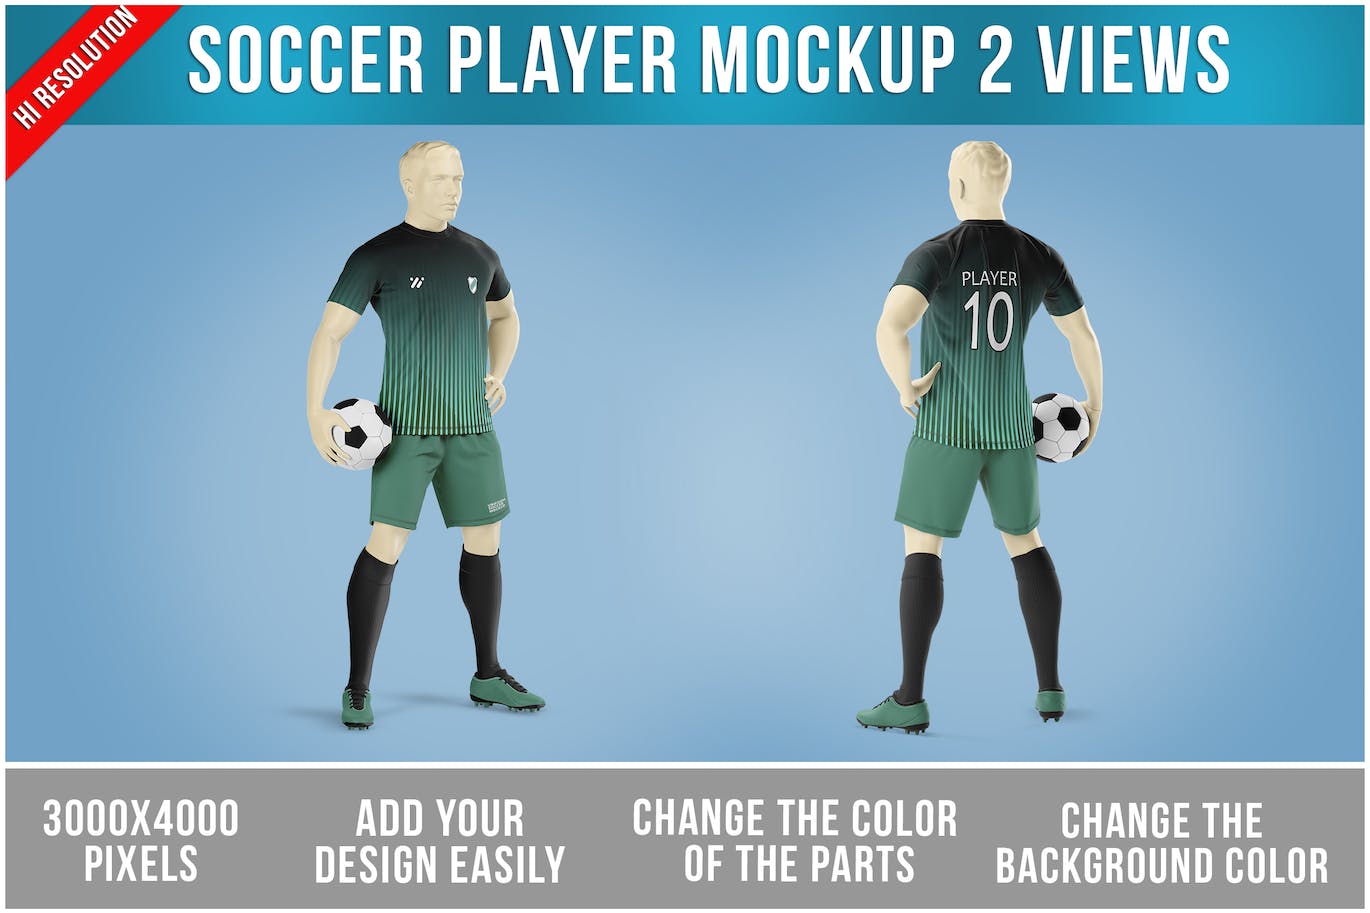 足球运动员服装设计样机 Soccer Player Mockup Template 样机素材 第1张